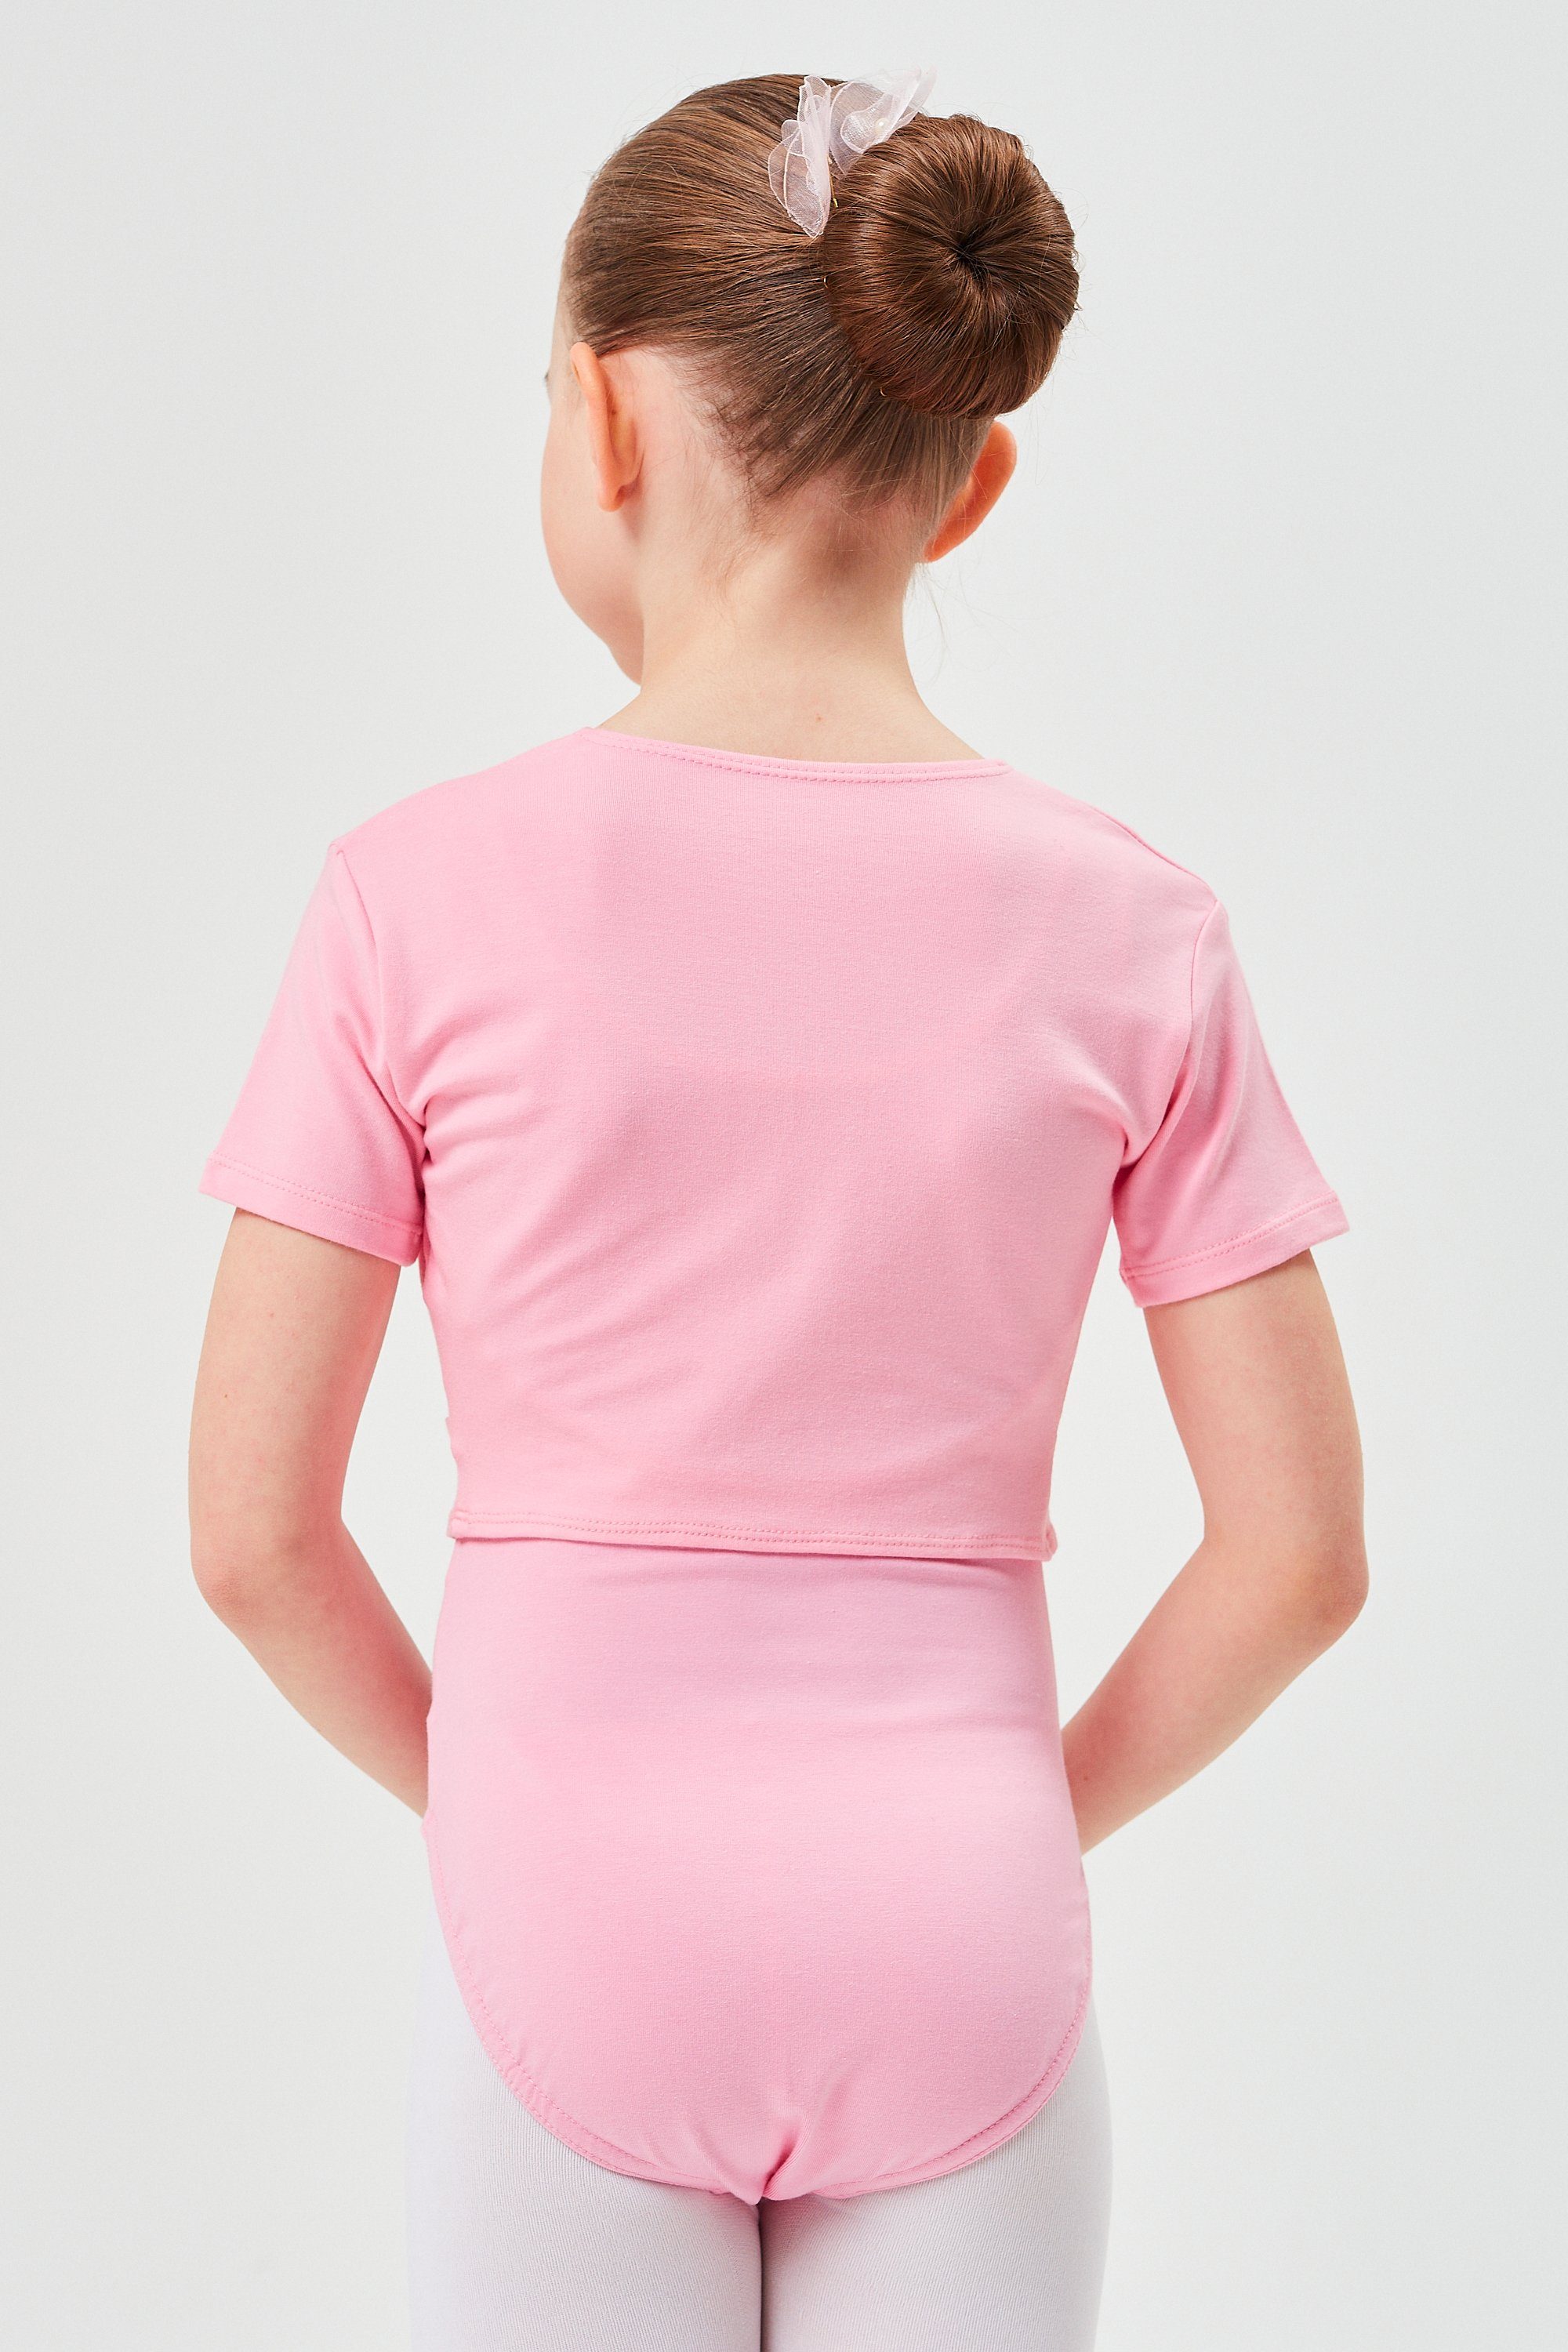 Kurzarm rosa Top für Baumwolle tanzmuster Madita Mädchen wunderbar Ballett Crop-Top aus weicher